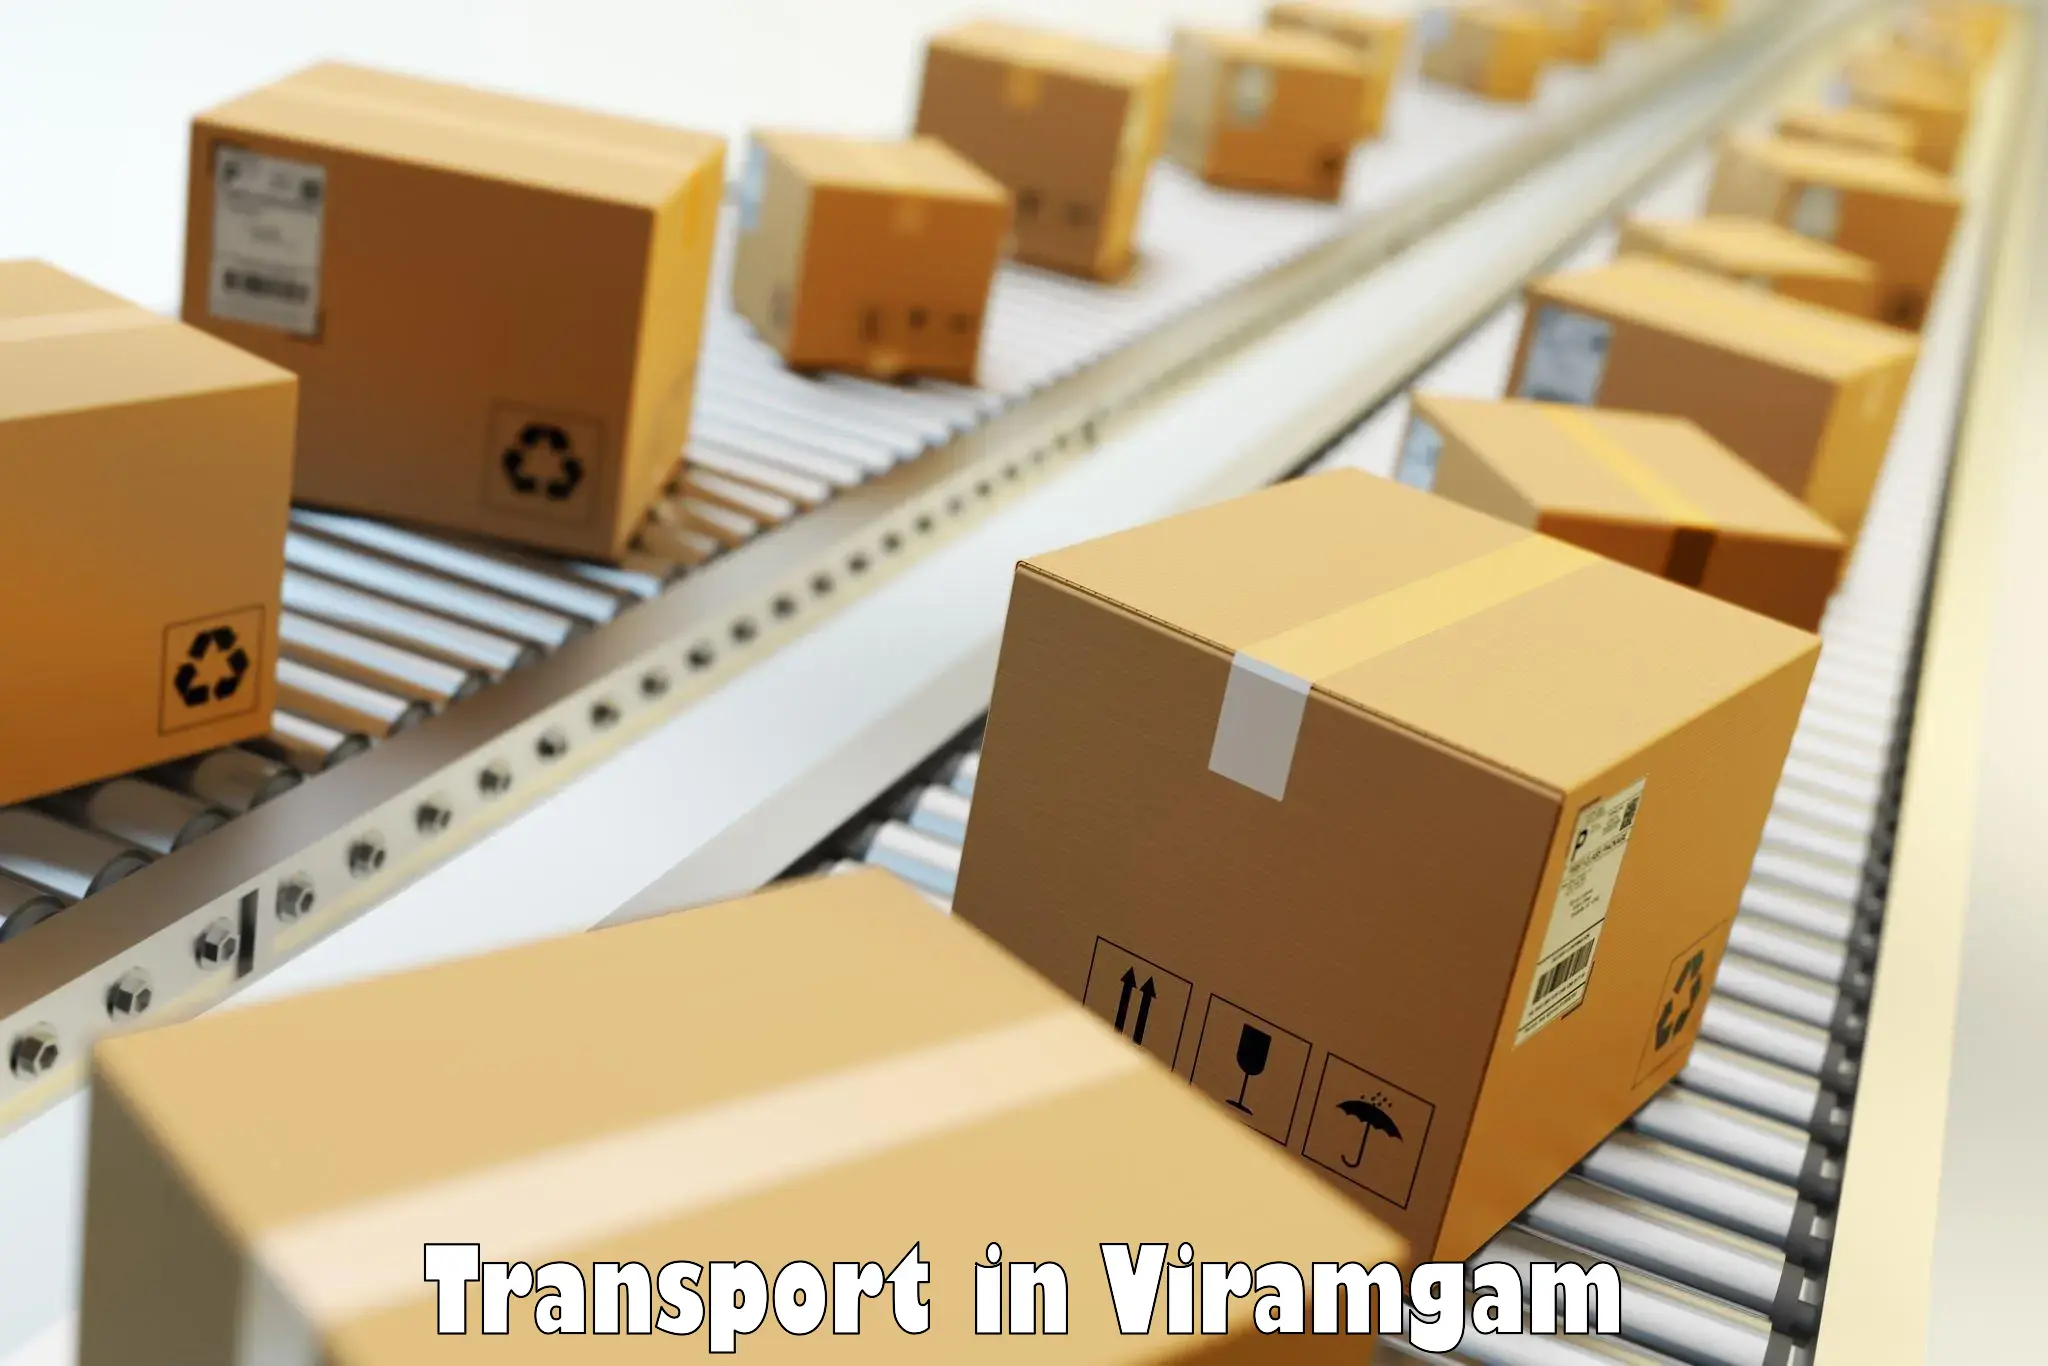 Road transport online services in Viramgam